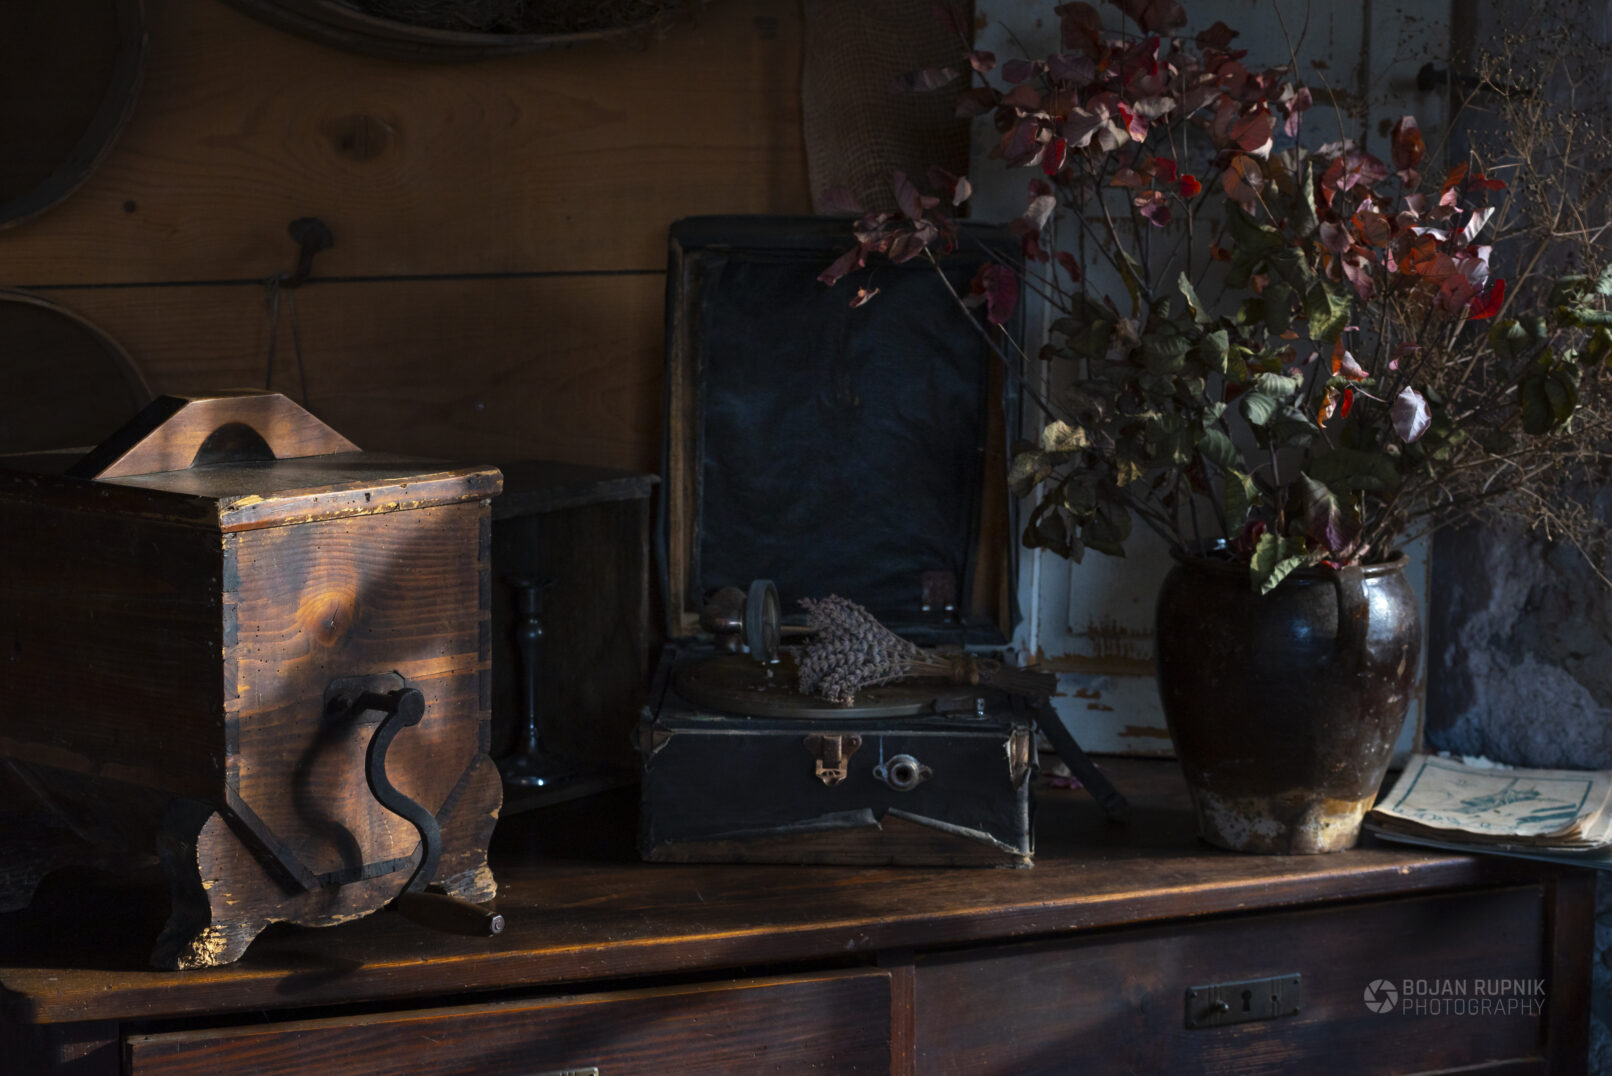 Starinski gramofon, lesen mlinček in lončena posoda s suhim cvetjem.